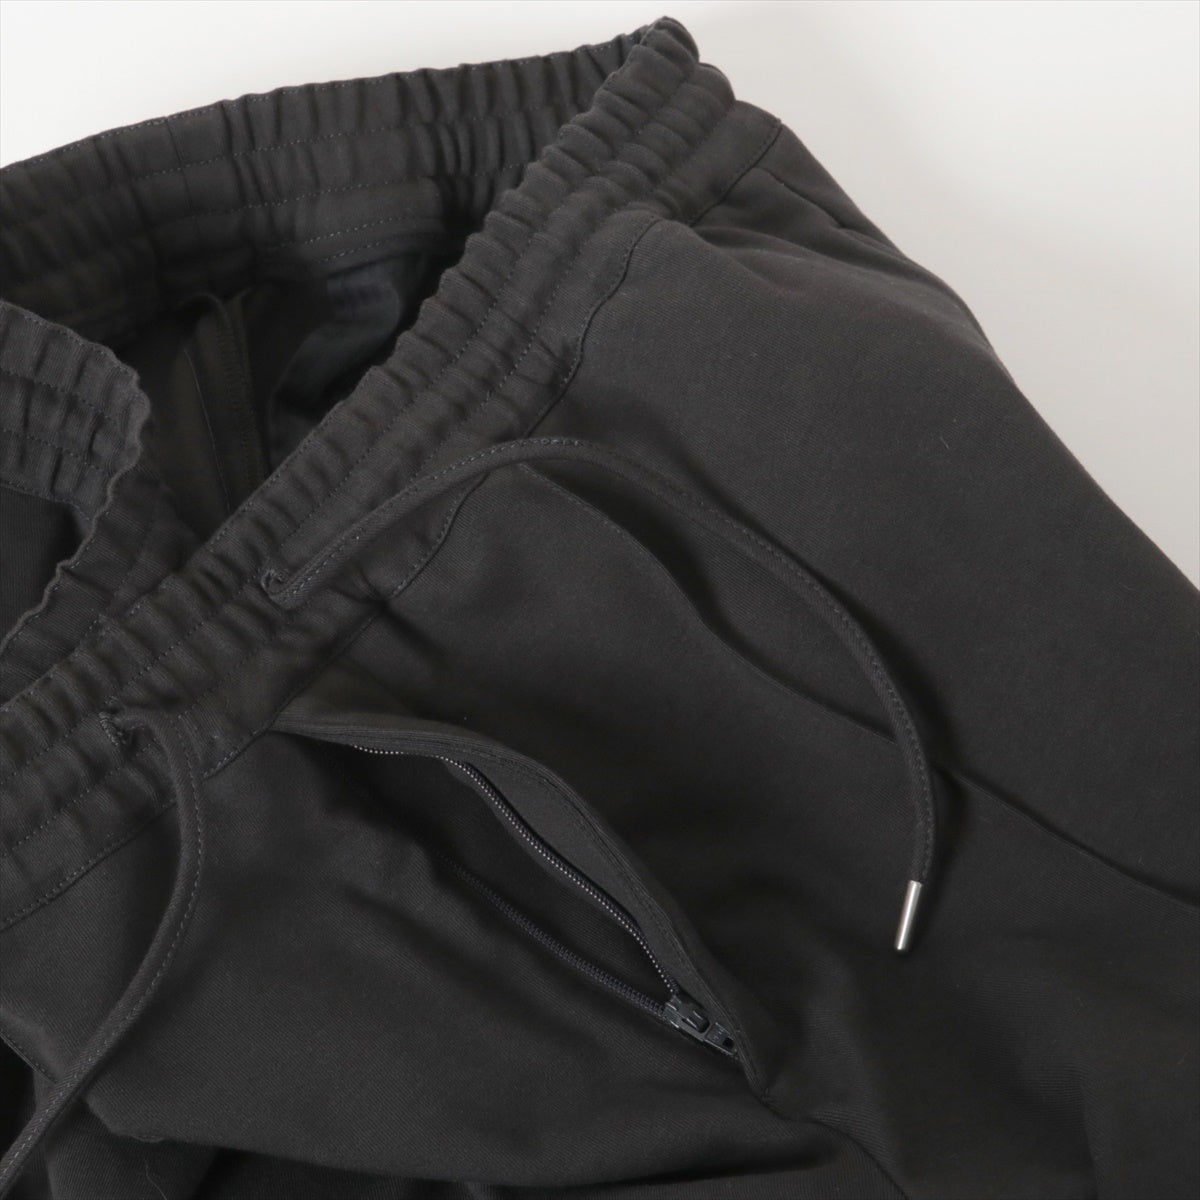 Hermès Cotton Sweatpants 40 Men's Black  Has spare buttons jogger pants